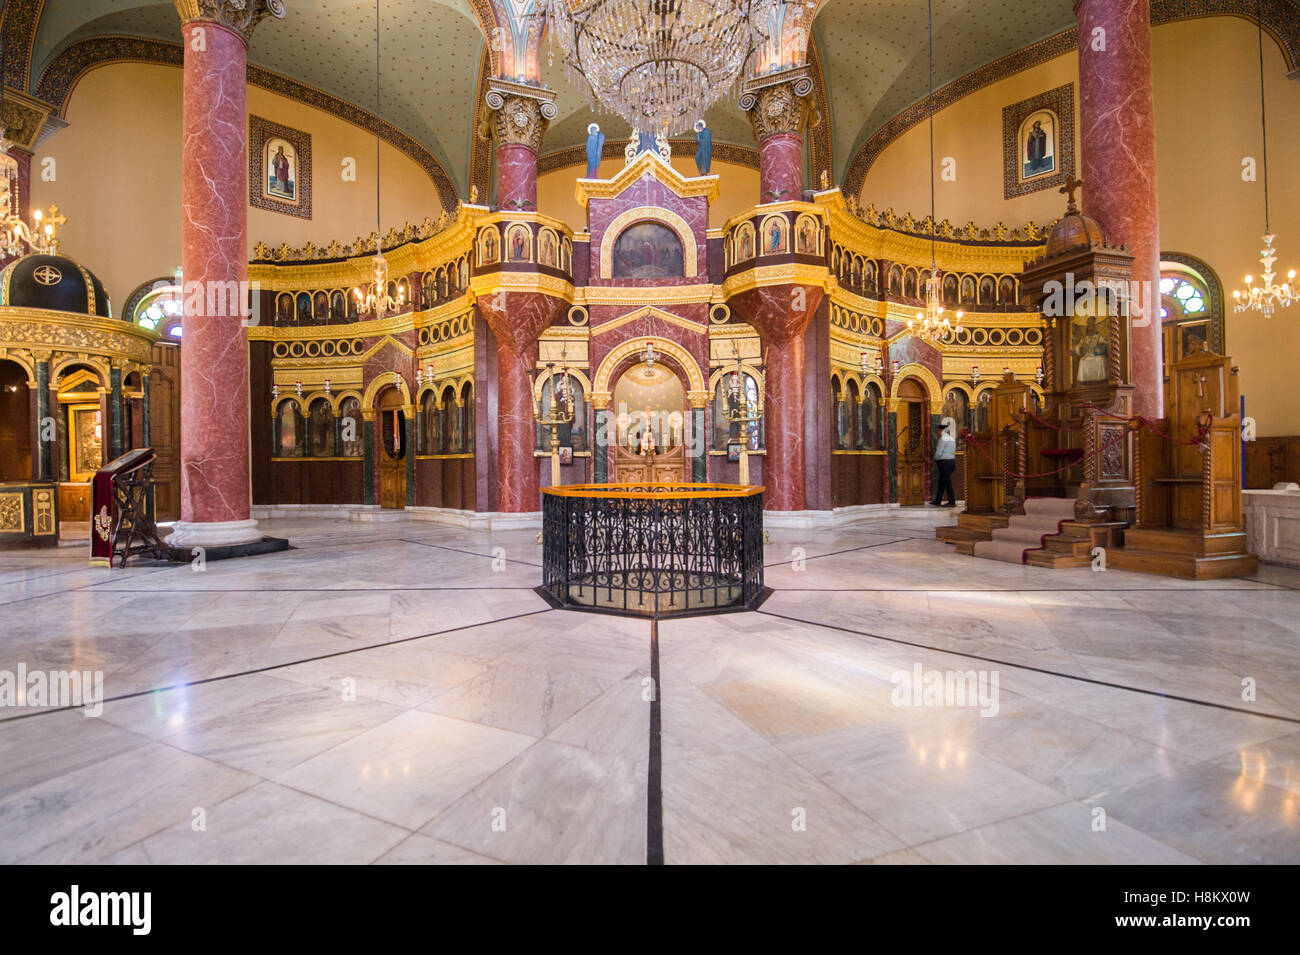 El Cairo, Egipto. Adornos interiores del reconstruido Monasterio de St George en el barrio Copto de El Cairo. Foto de stock